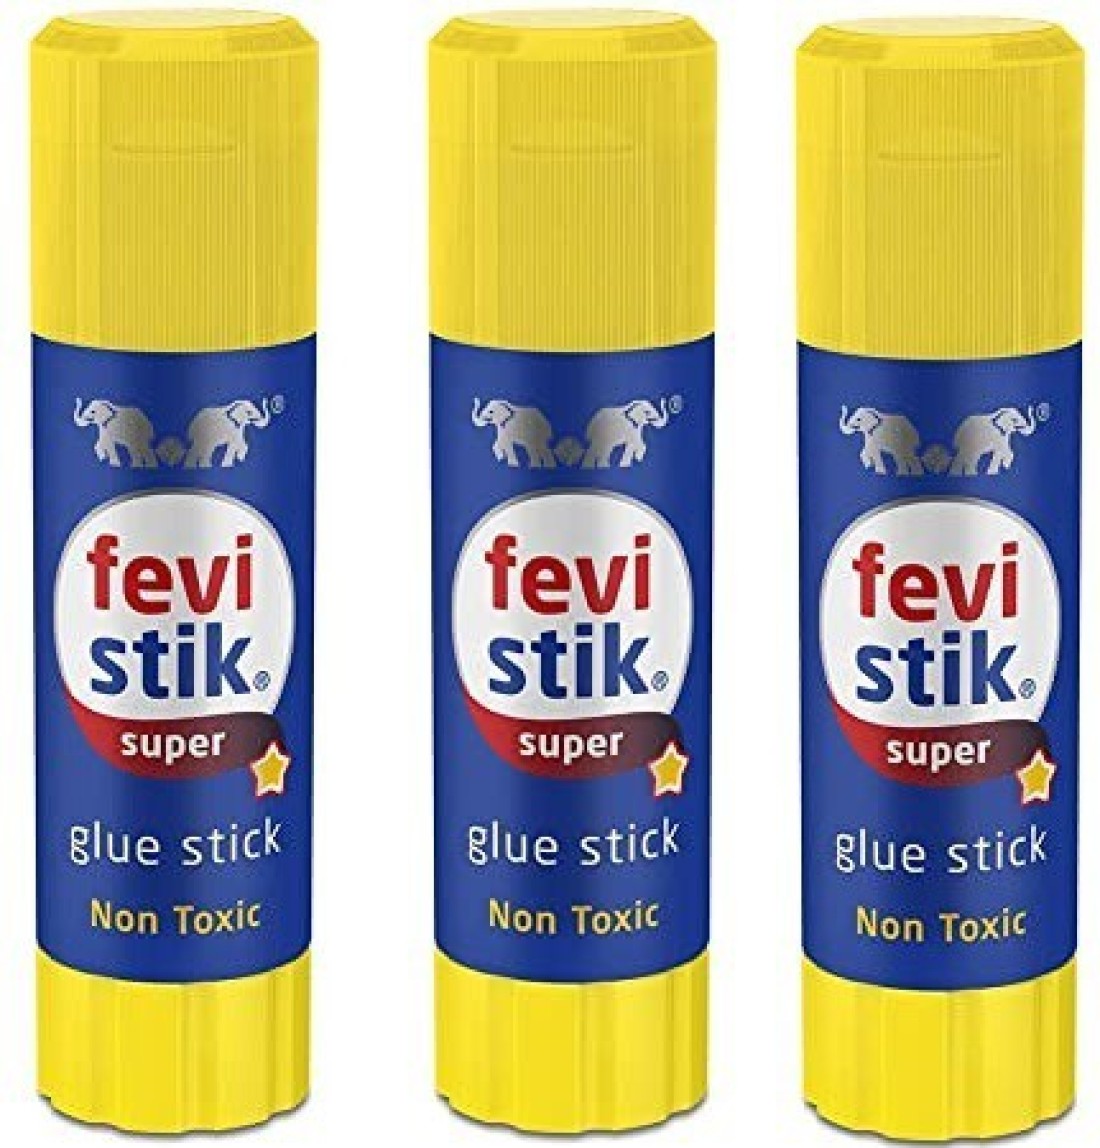 Pidilite Fevistik Glue Stick 8gm Pack of 5 Adhesive Price in India